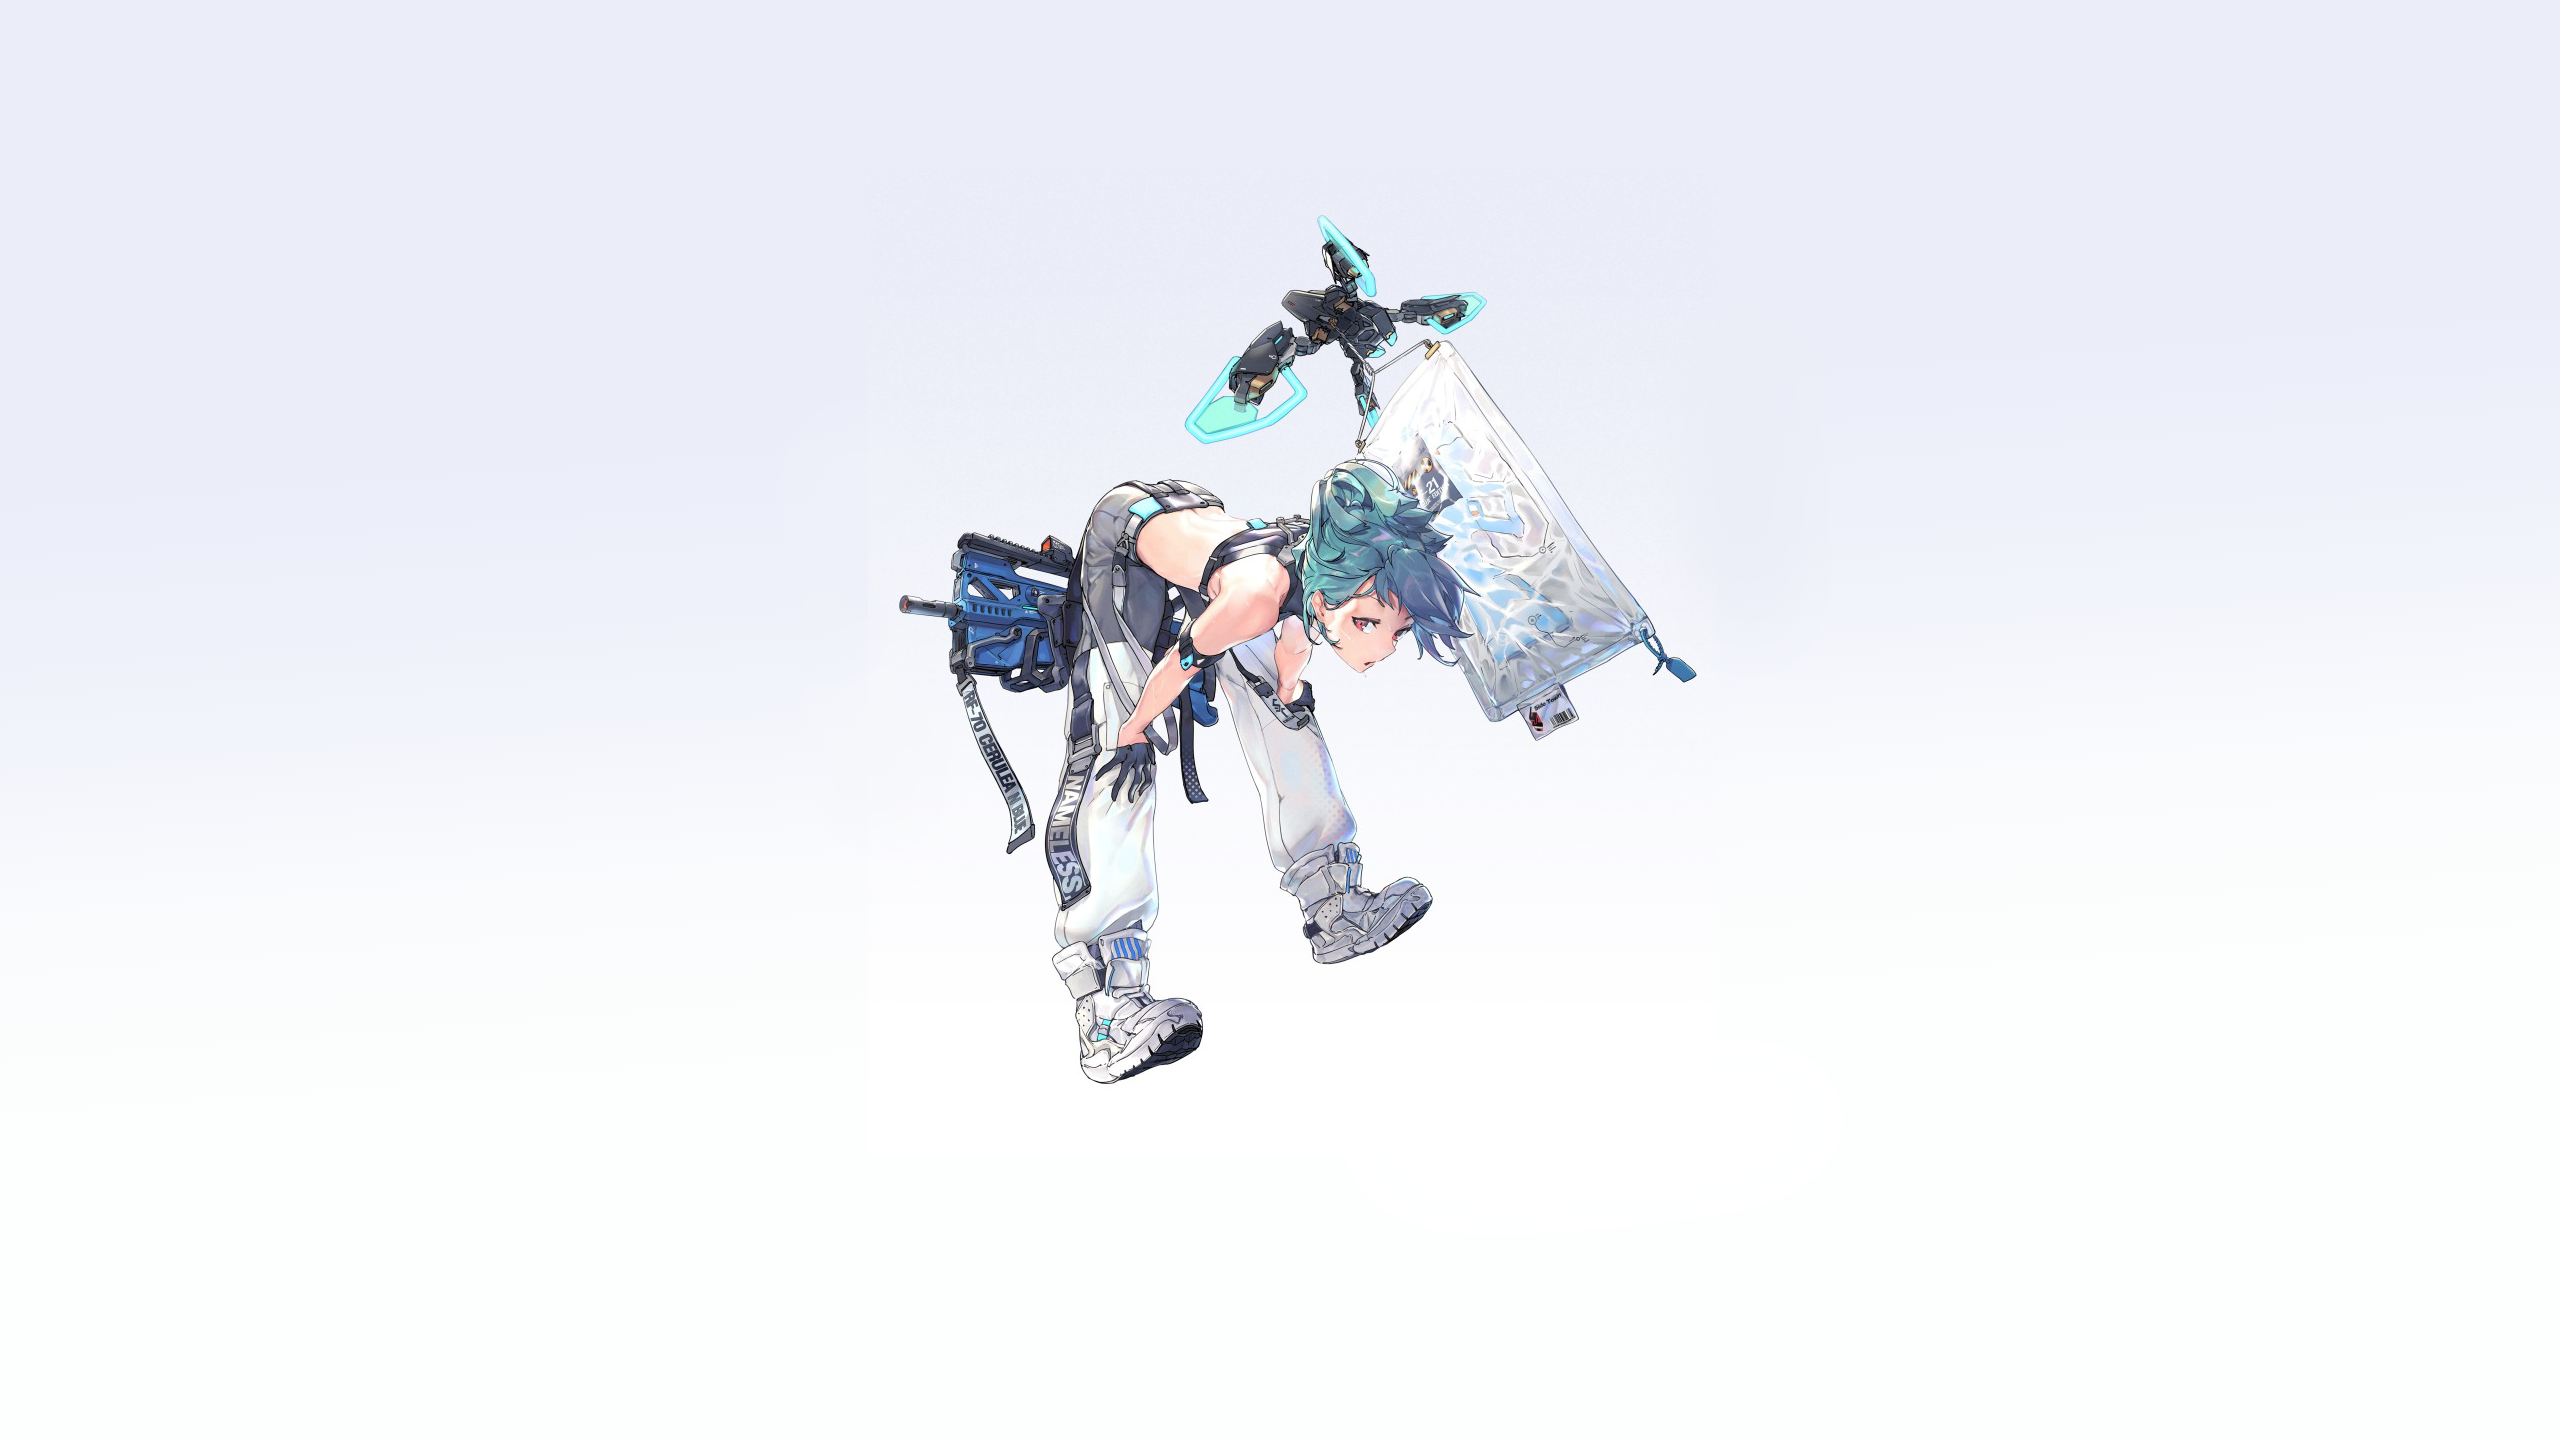 Anime Gun Futuristic Drone Blue Hair Red Eyes Cargo Pants 2560x1440